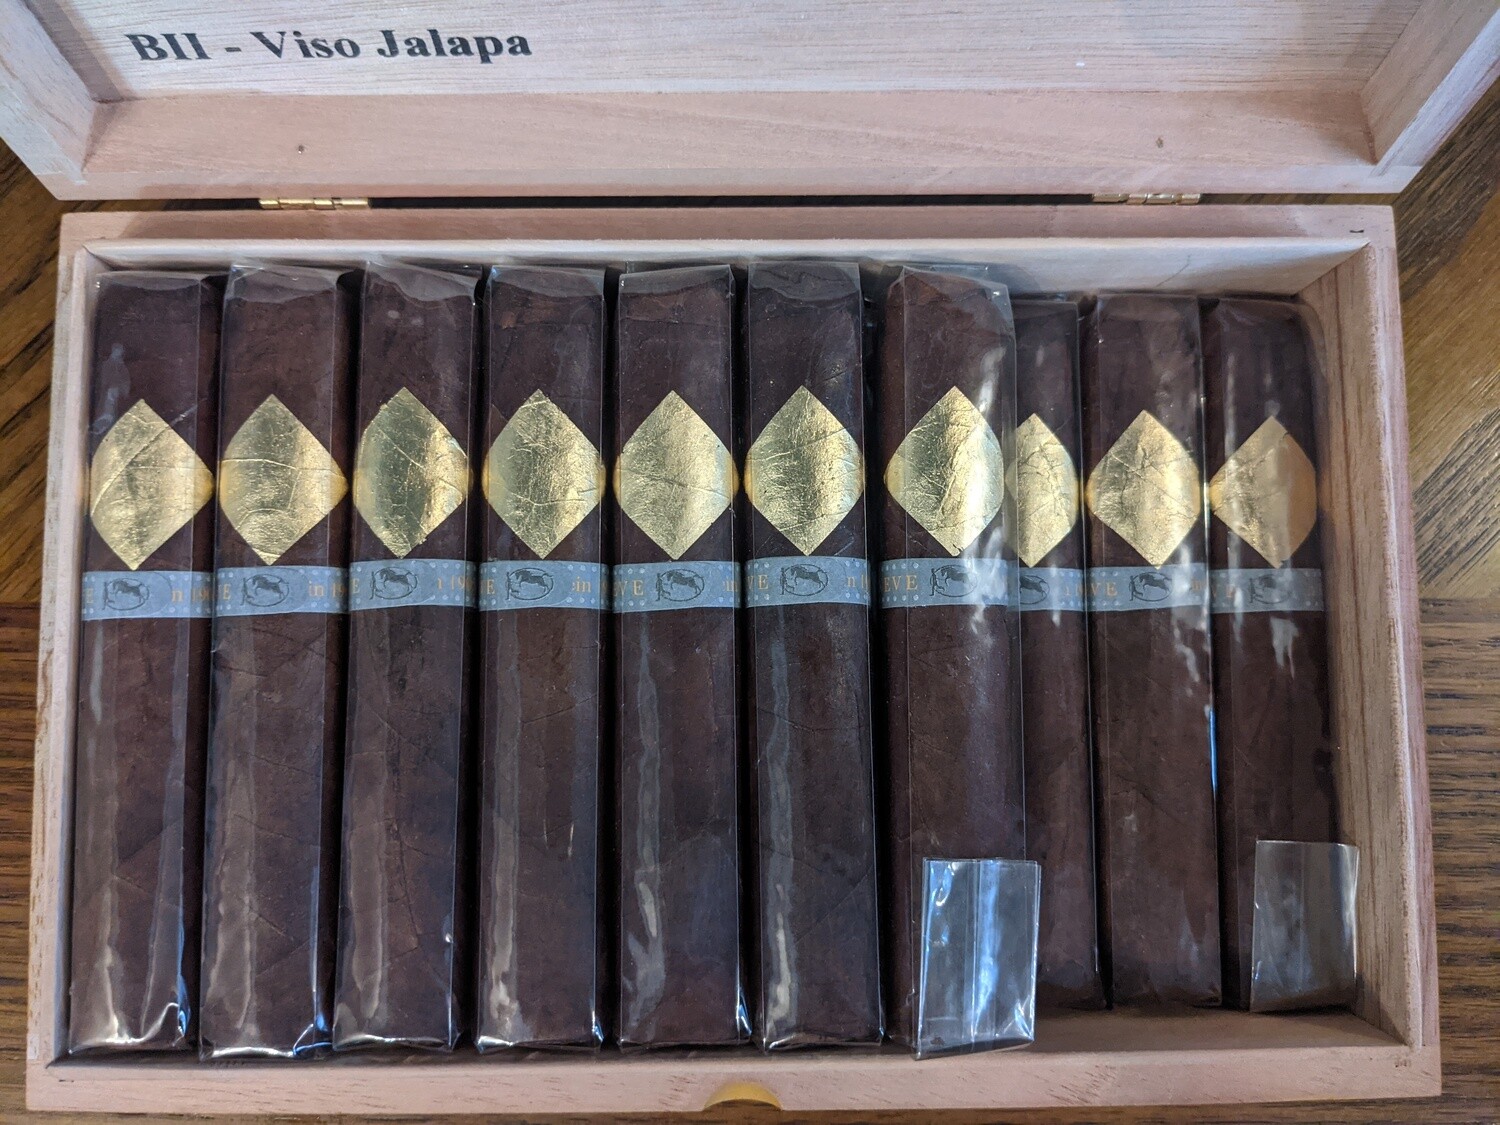 Cavalier Geneve BII Viso Jalapa Robusto Gordo 5 x 54 Single Cigar